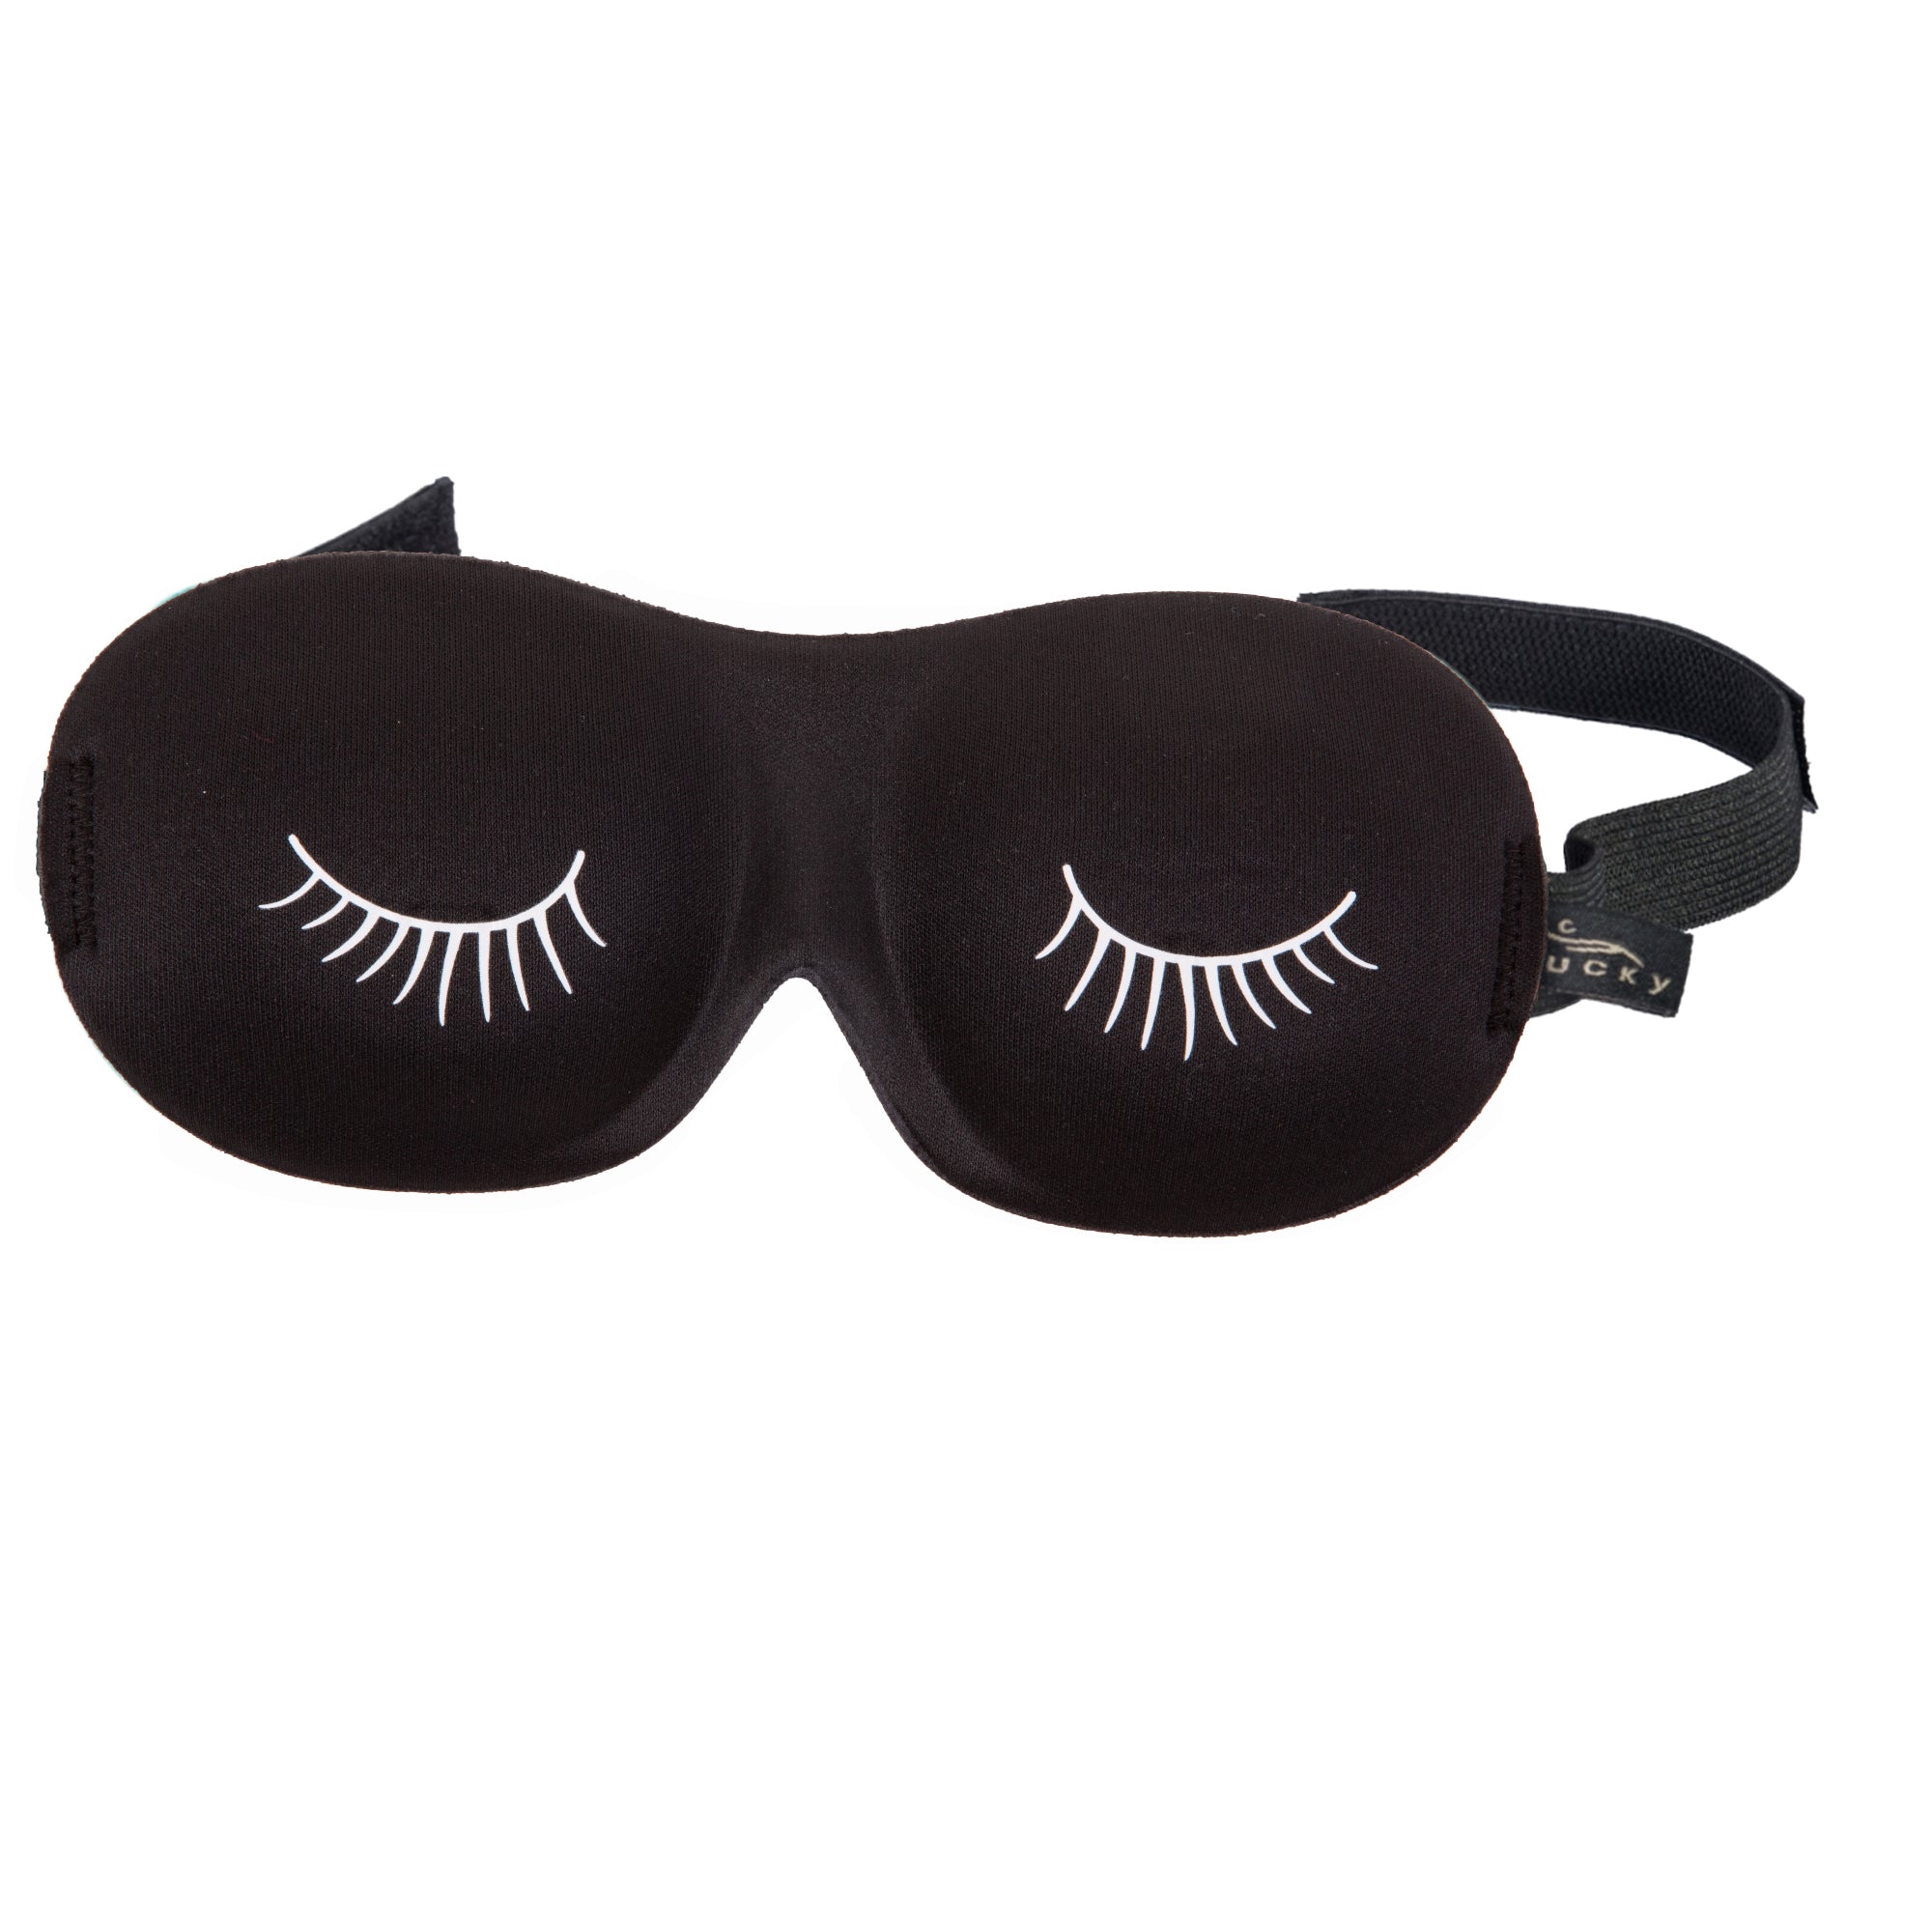 Ultralight Sleep Mask - Black & White Eyelashes